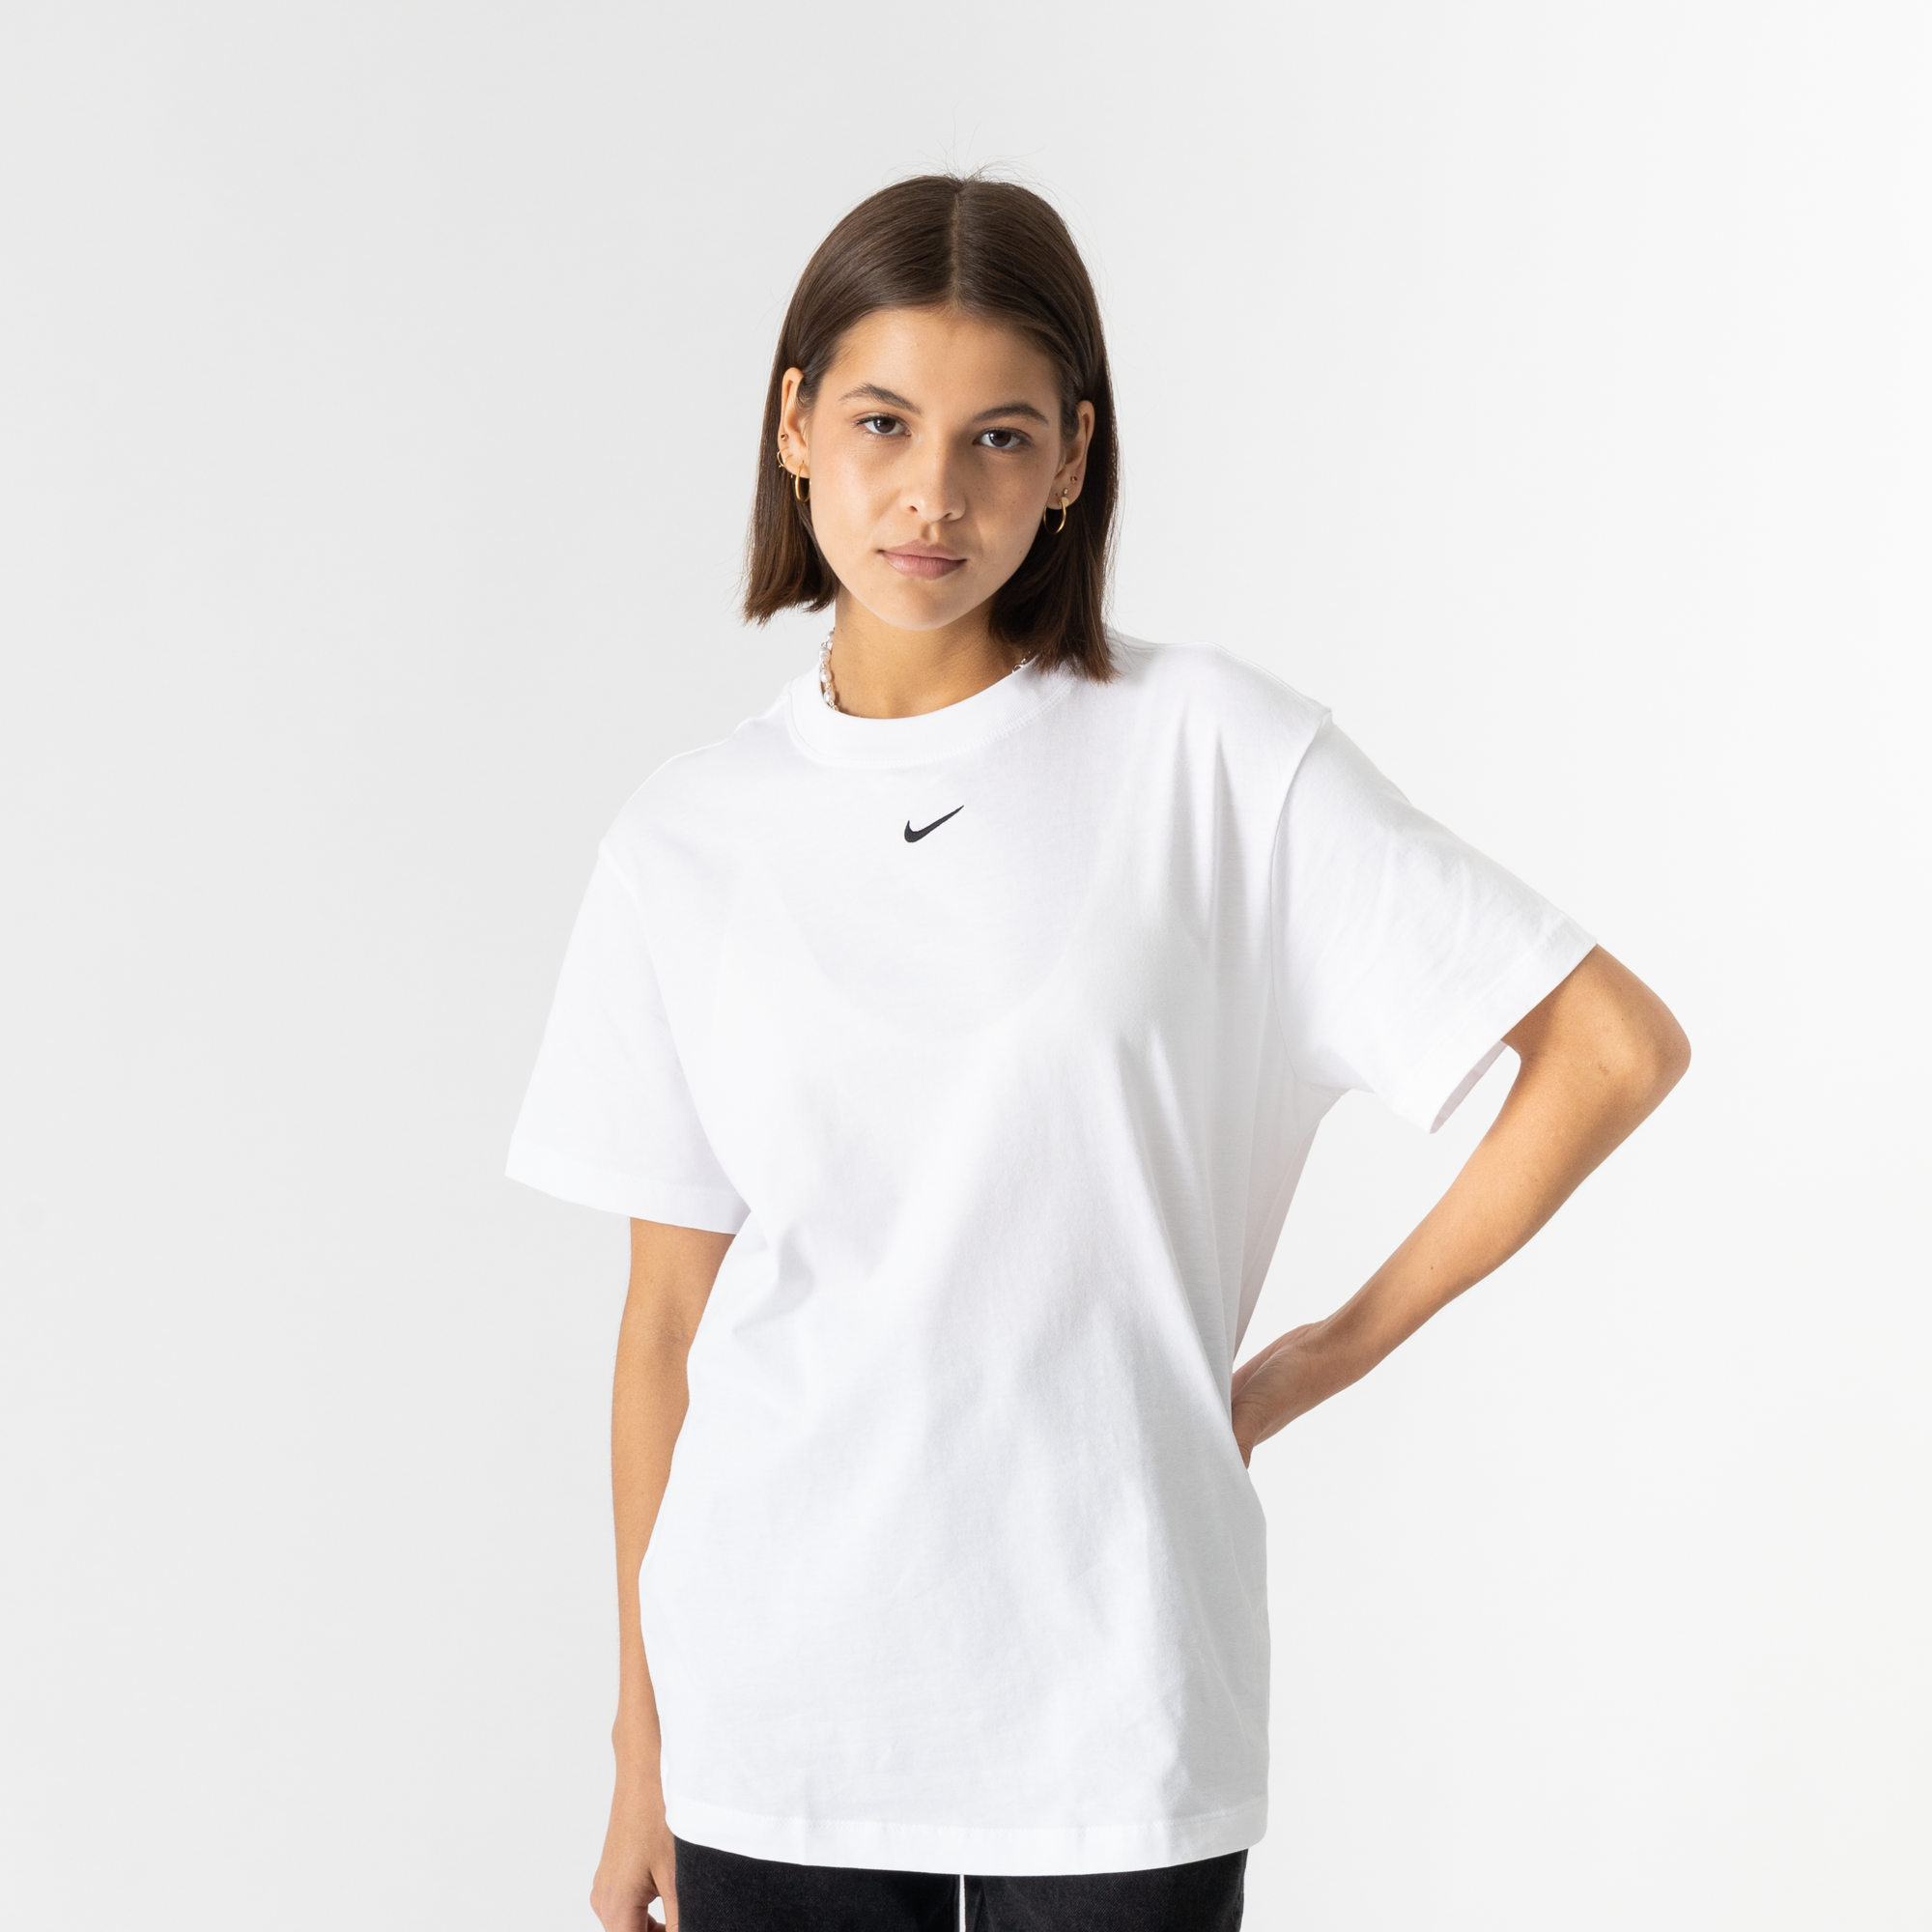 Nouveau basic t-shirt gris top shirt femme sport shirt unterziehshirt taille 36/38 